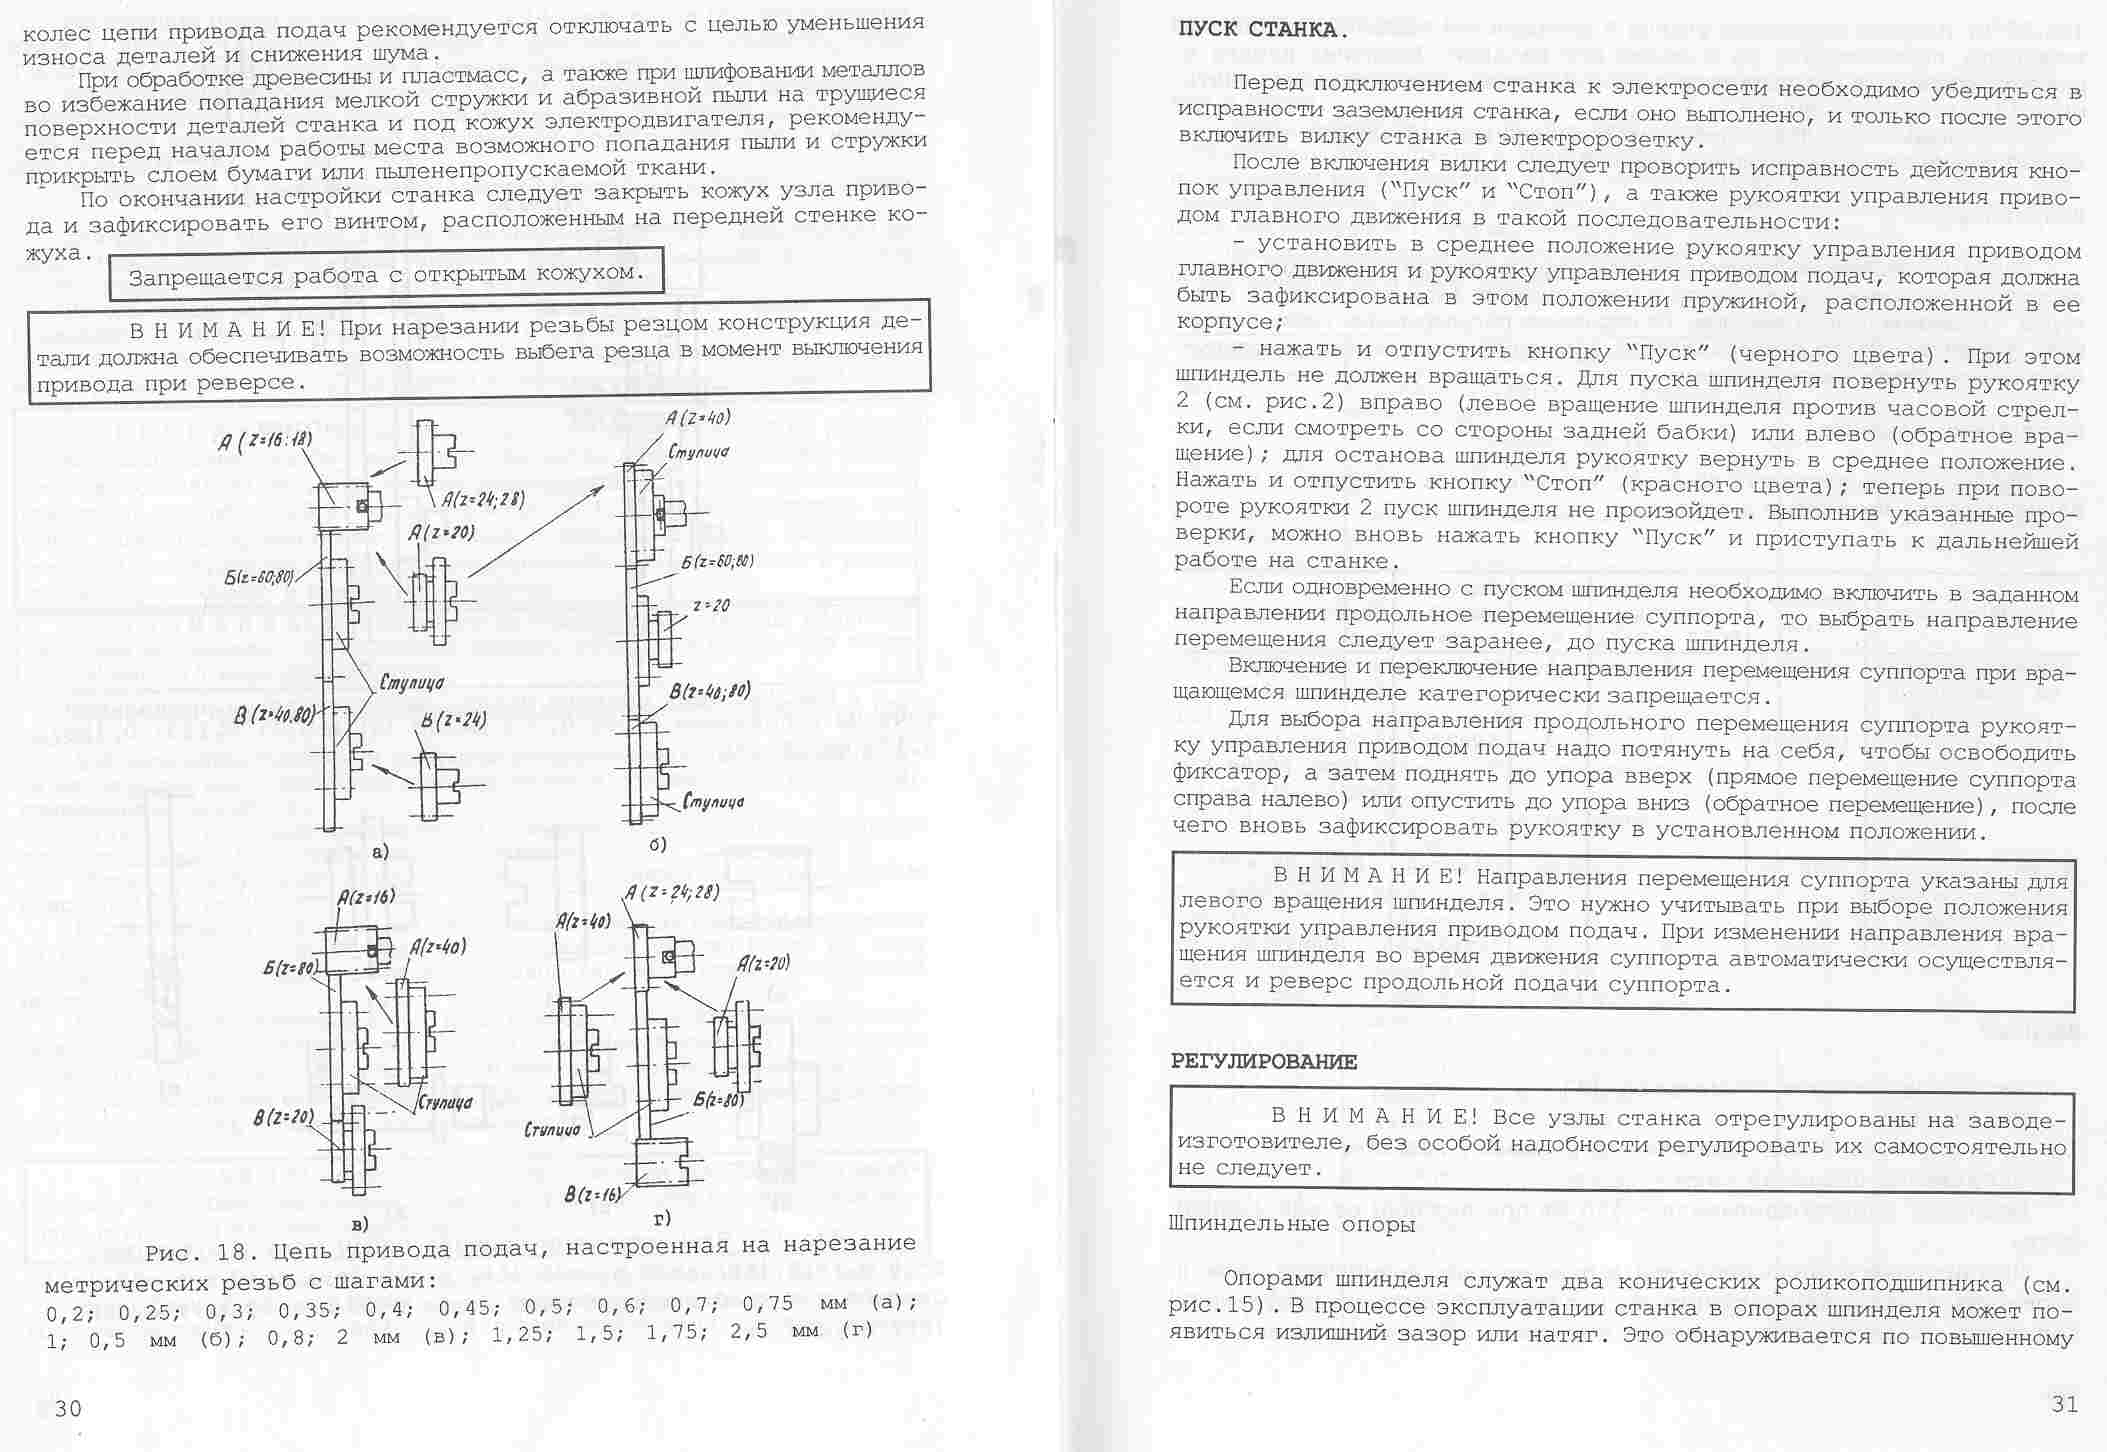 Обзор токарного станка универсал-2: виды основных функций и характеристики